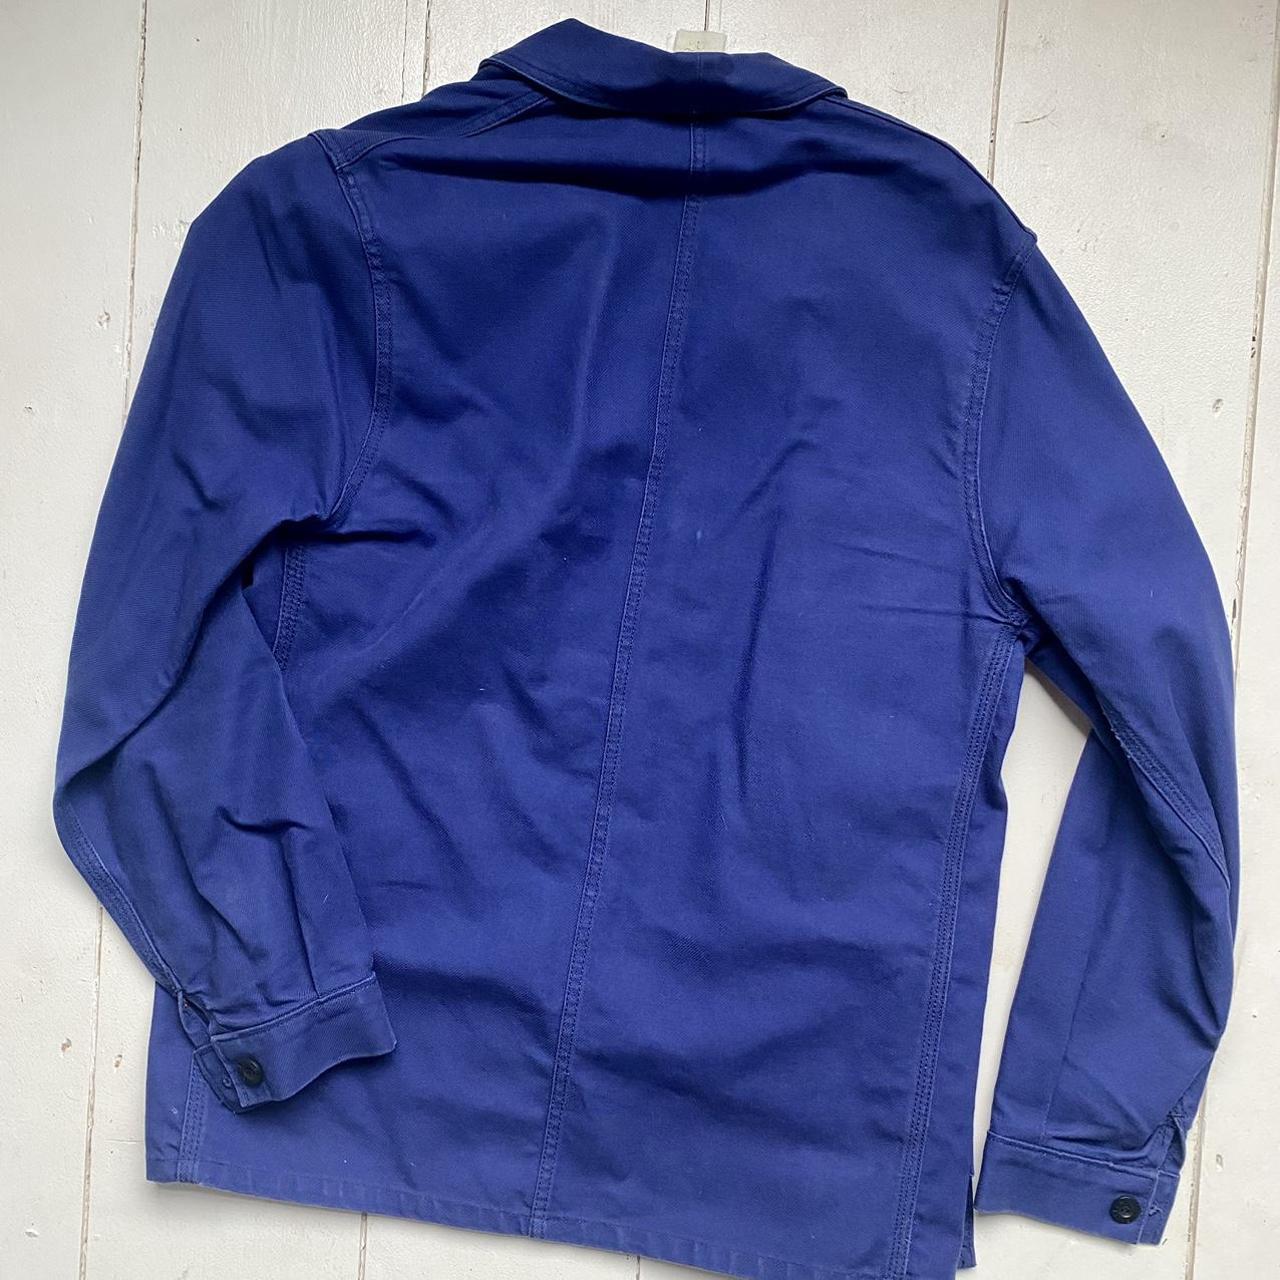 Le Laboureur French Work Chore Jacket Blue Rare Size... - Depop